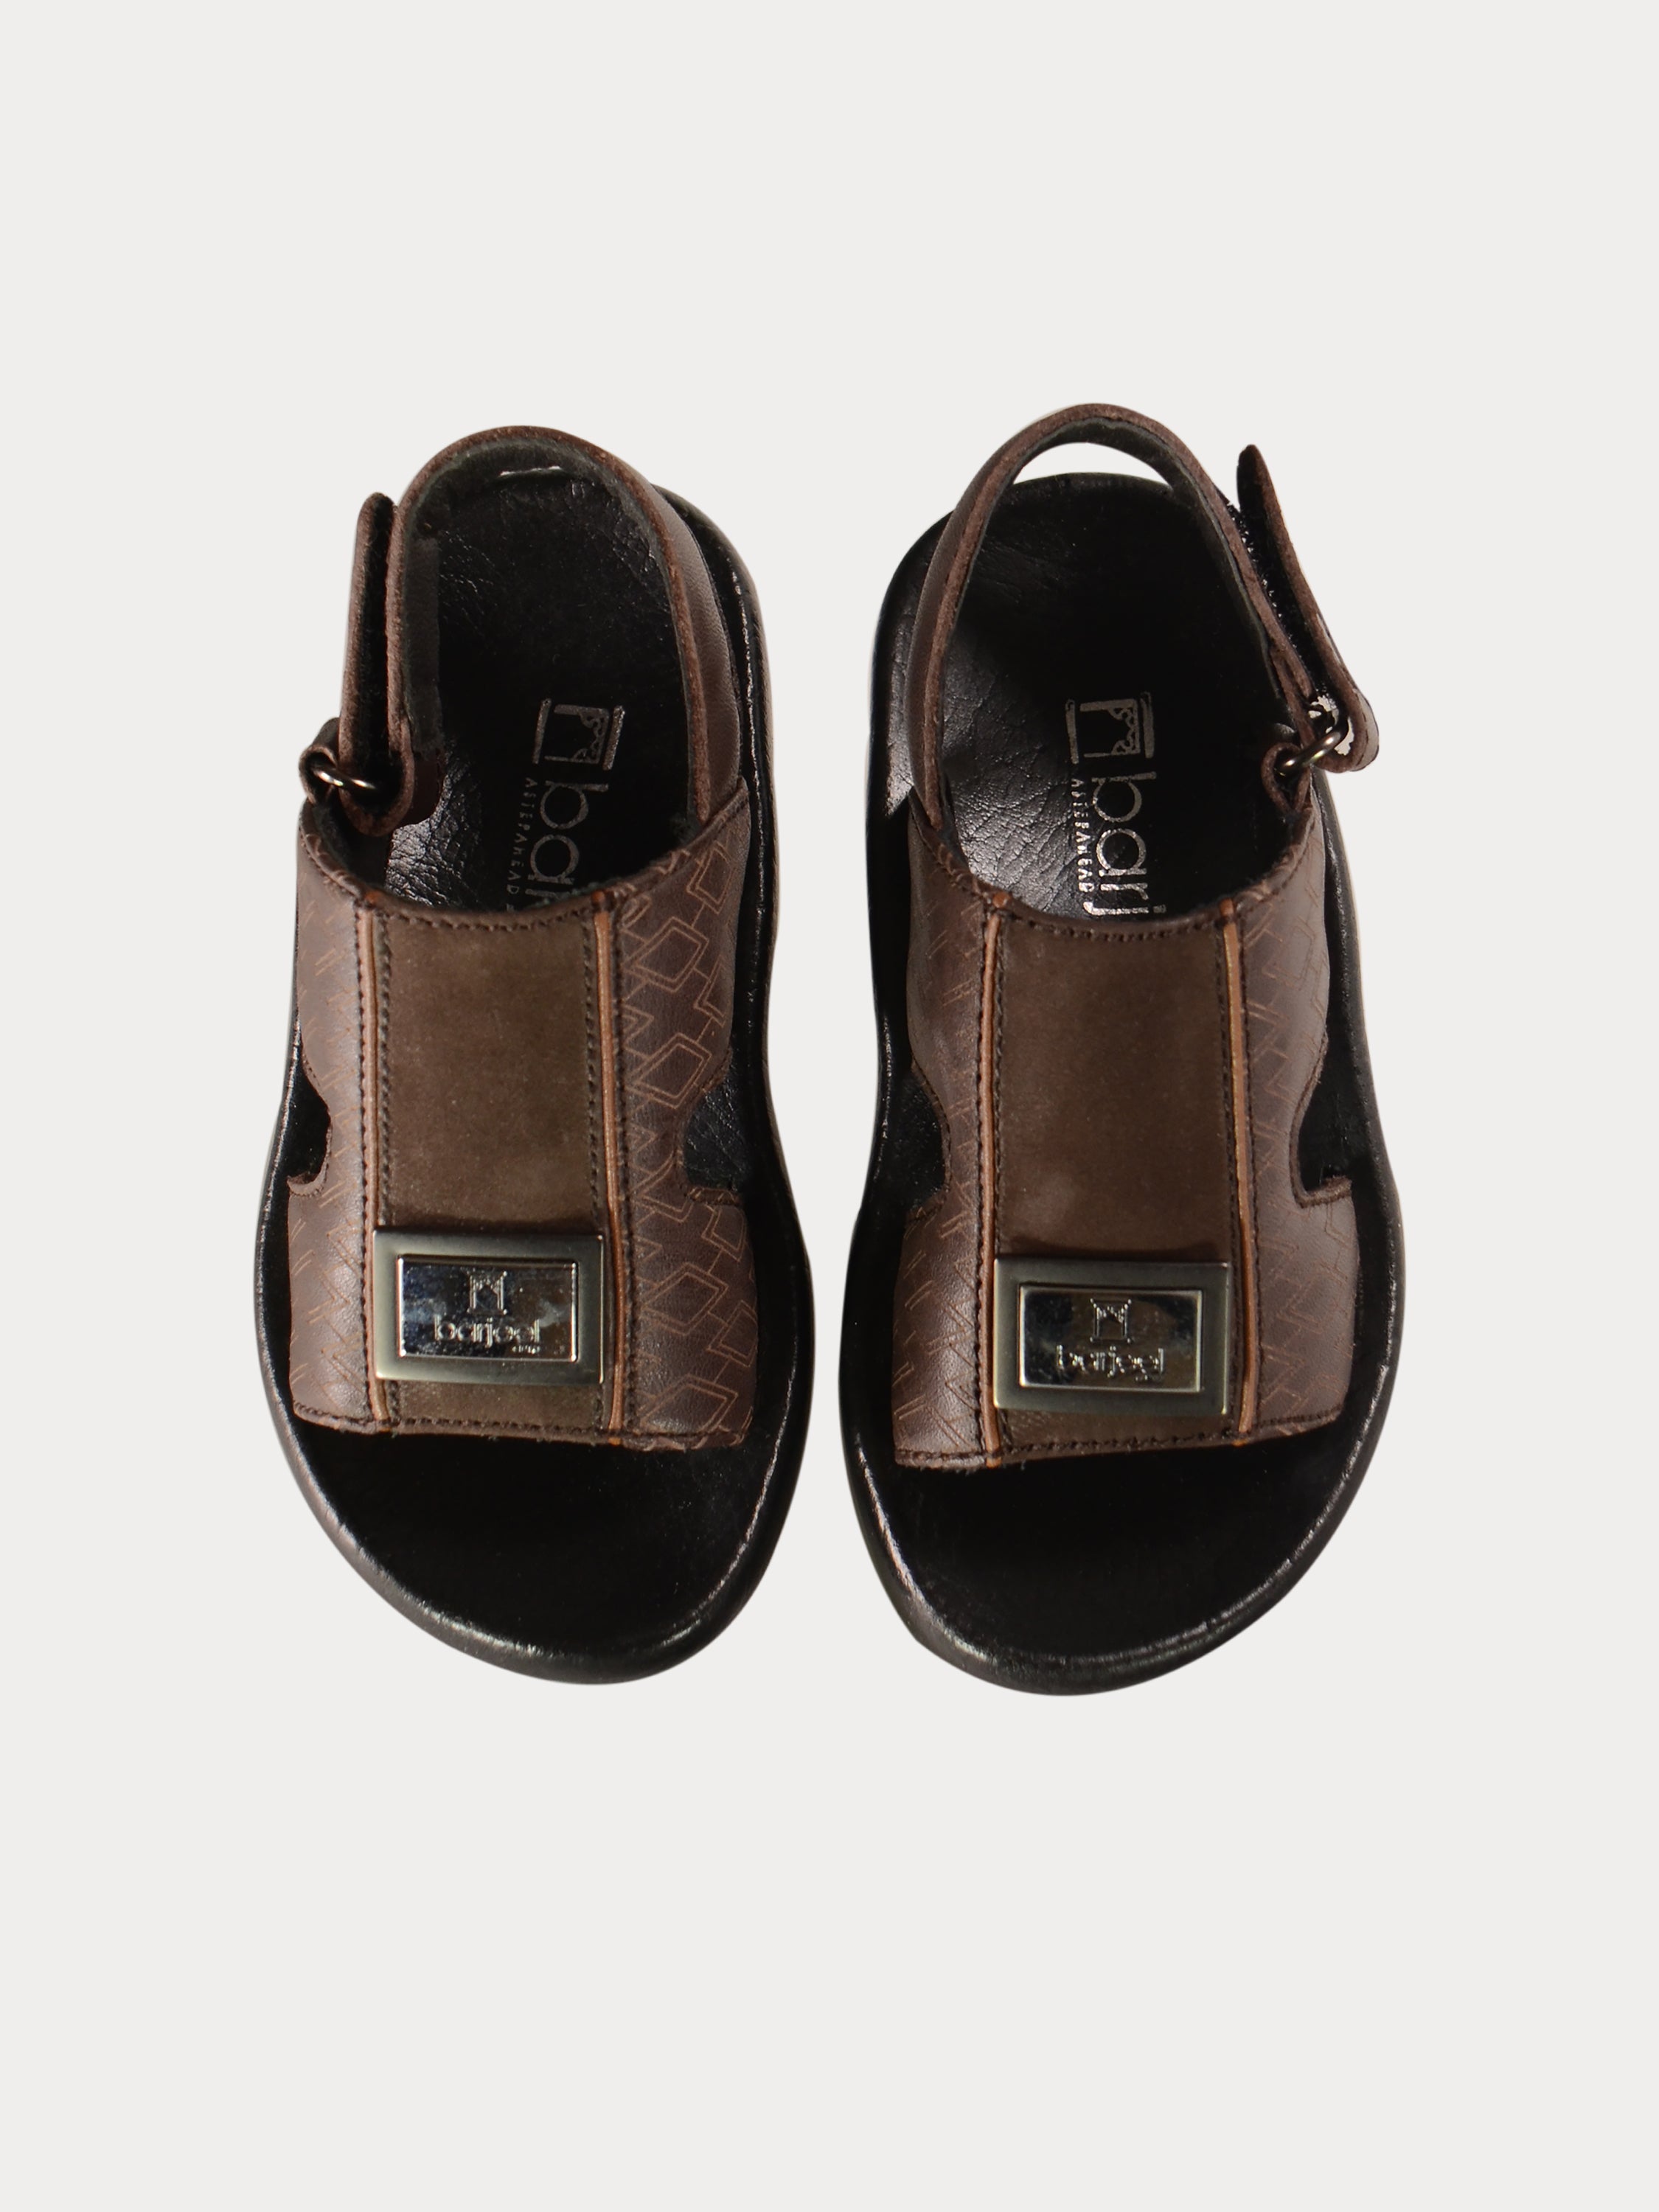 Barjeel Uno 2980510 Boys Diam Arabic Sandals #color_Brown